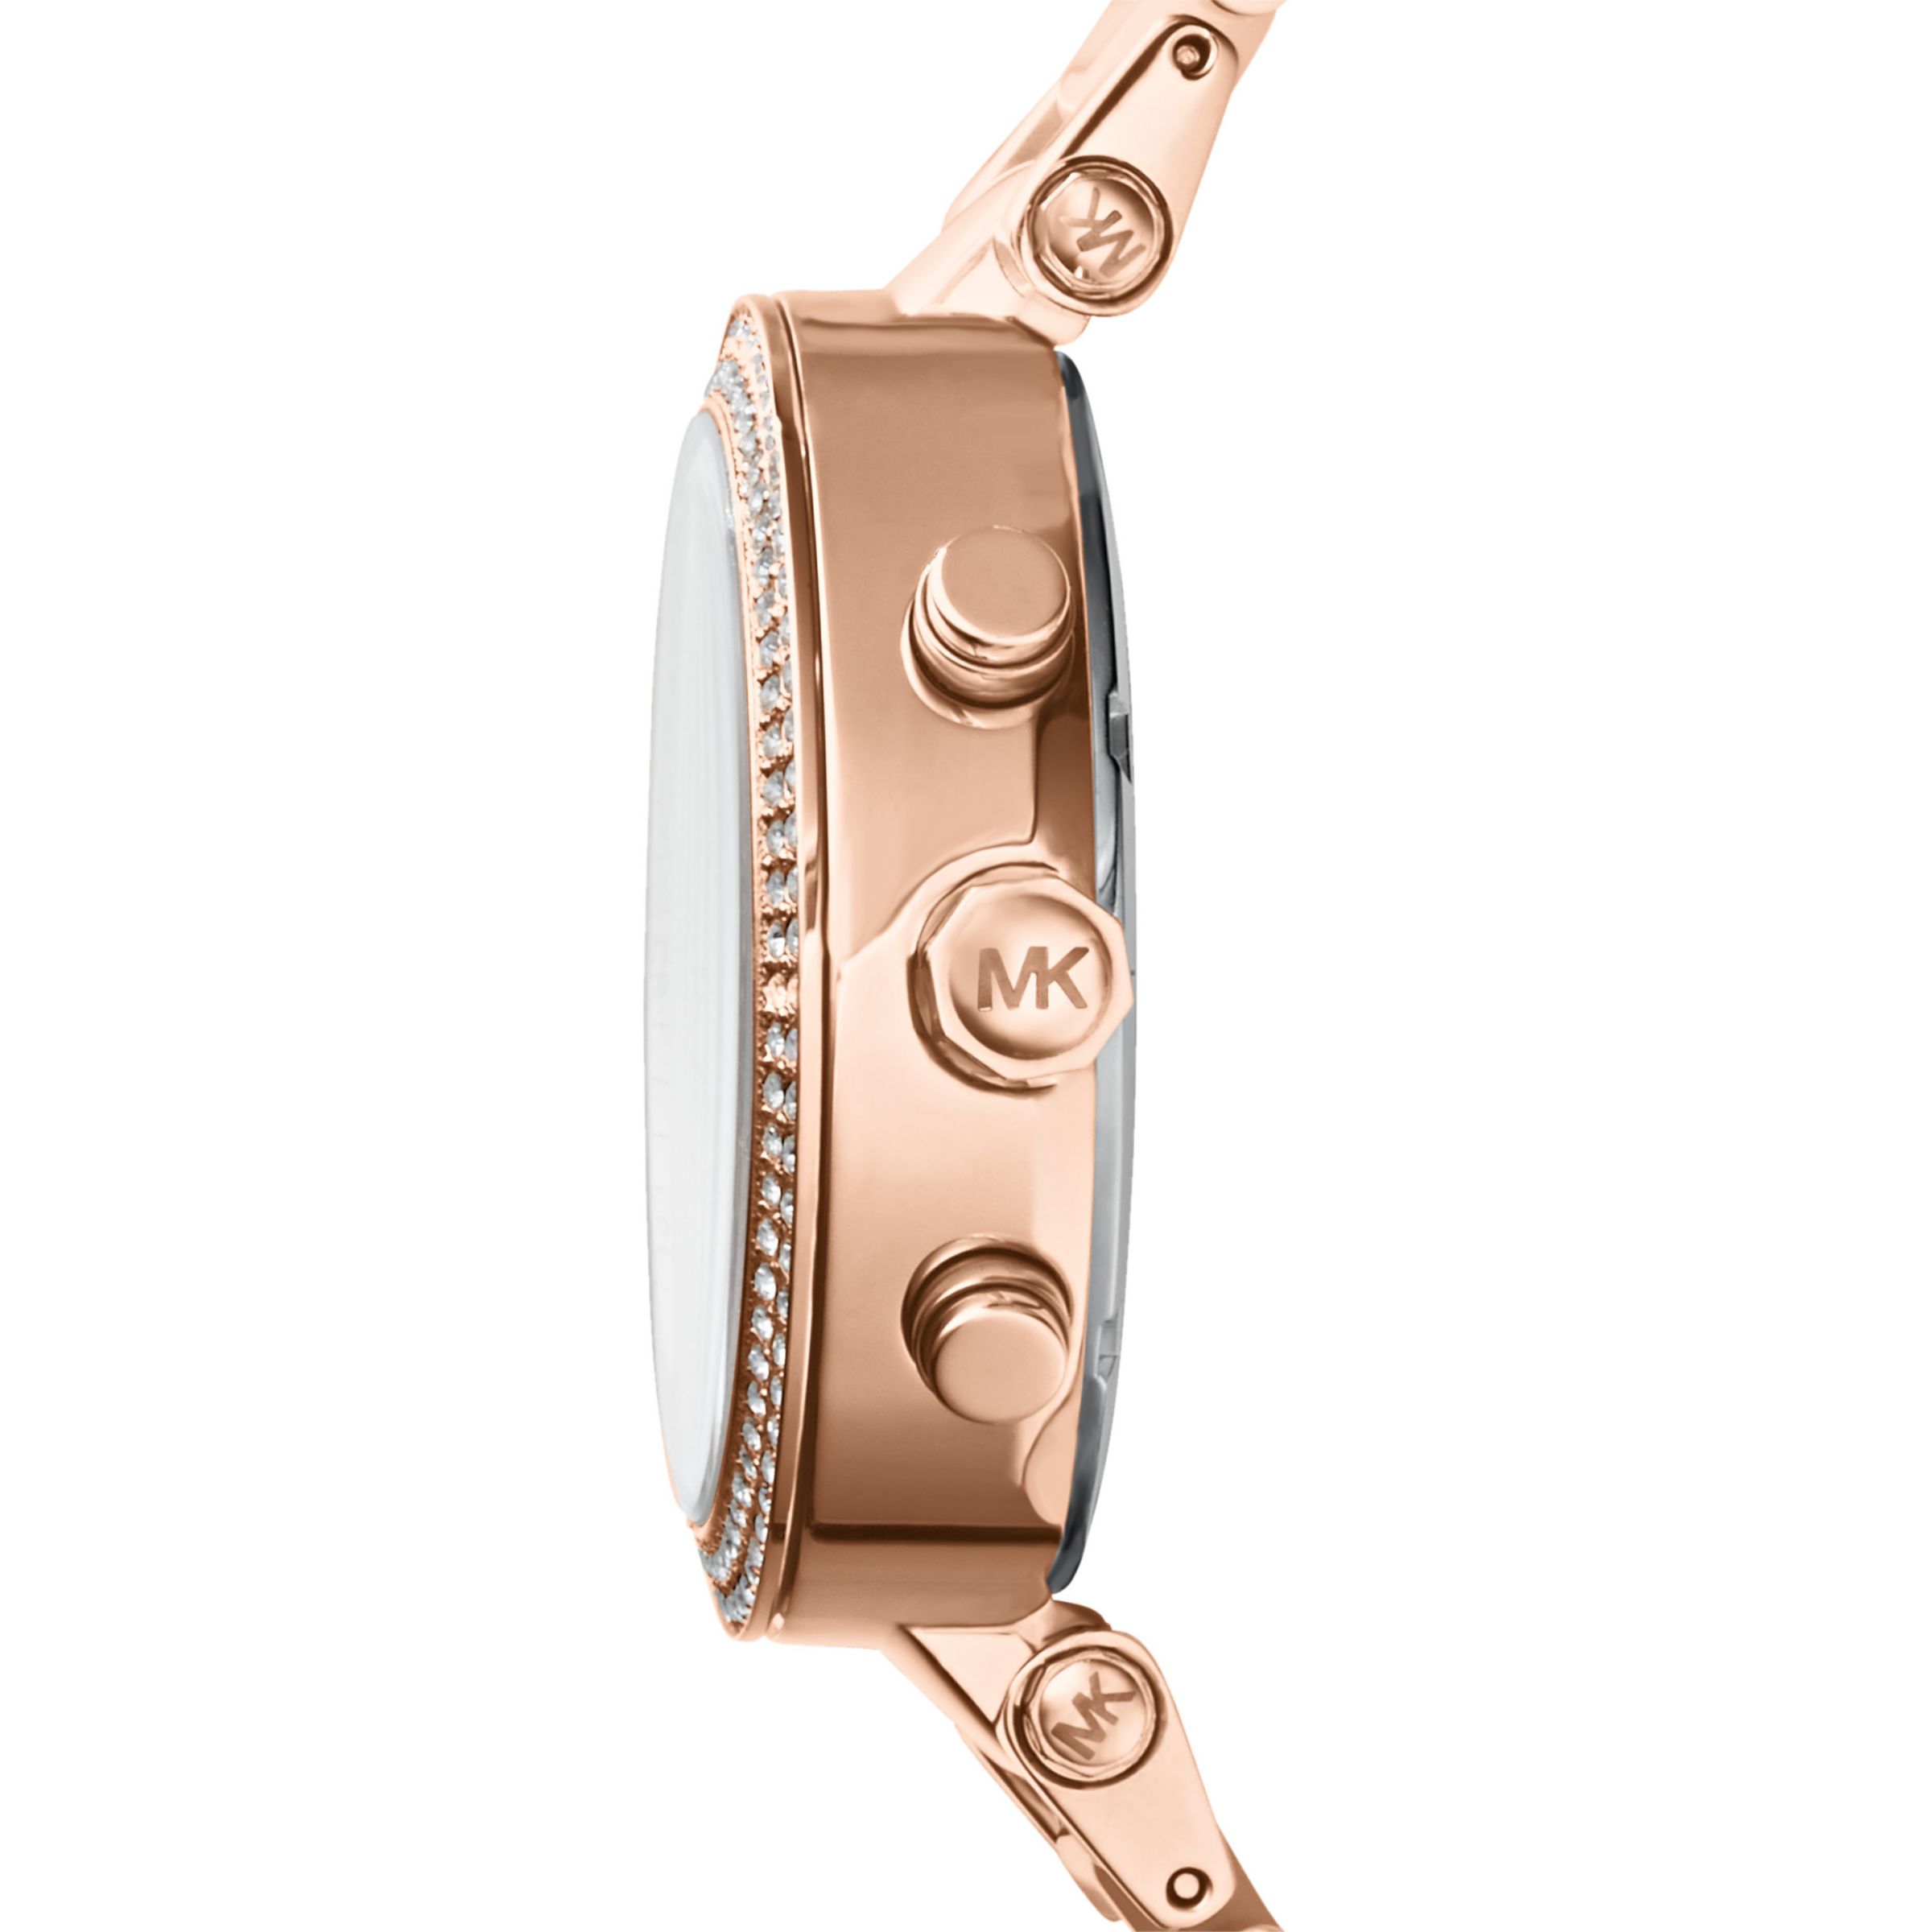 Michael Kors MK5896 Women's Parker Chronograph Bracelet Strap Watch, Multi/Blush